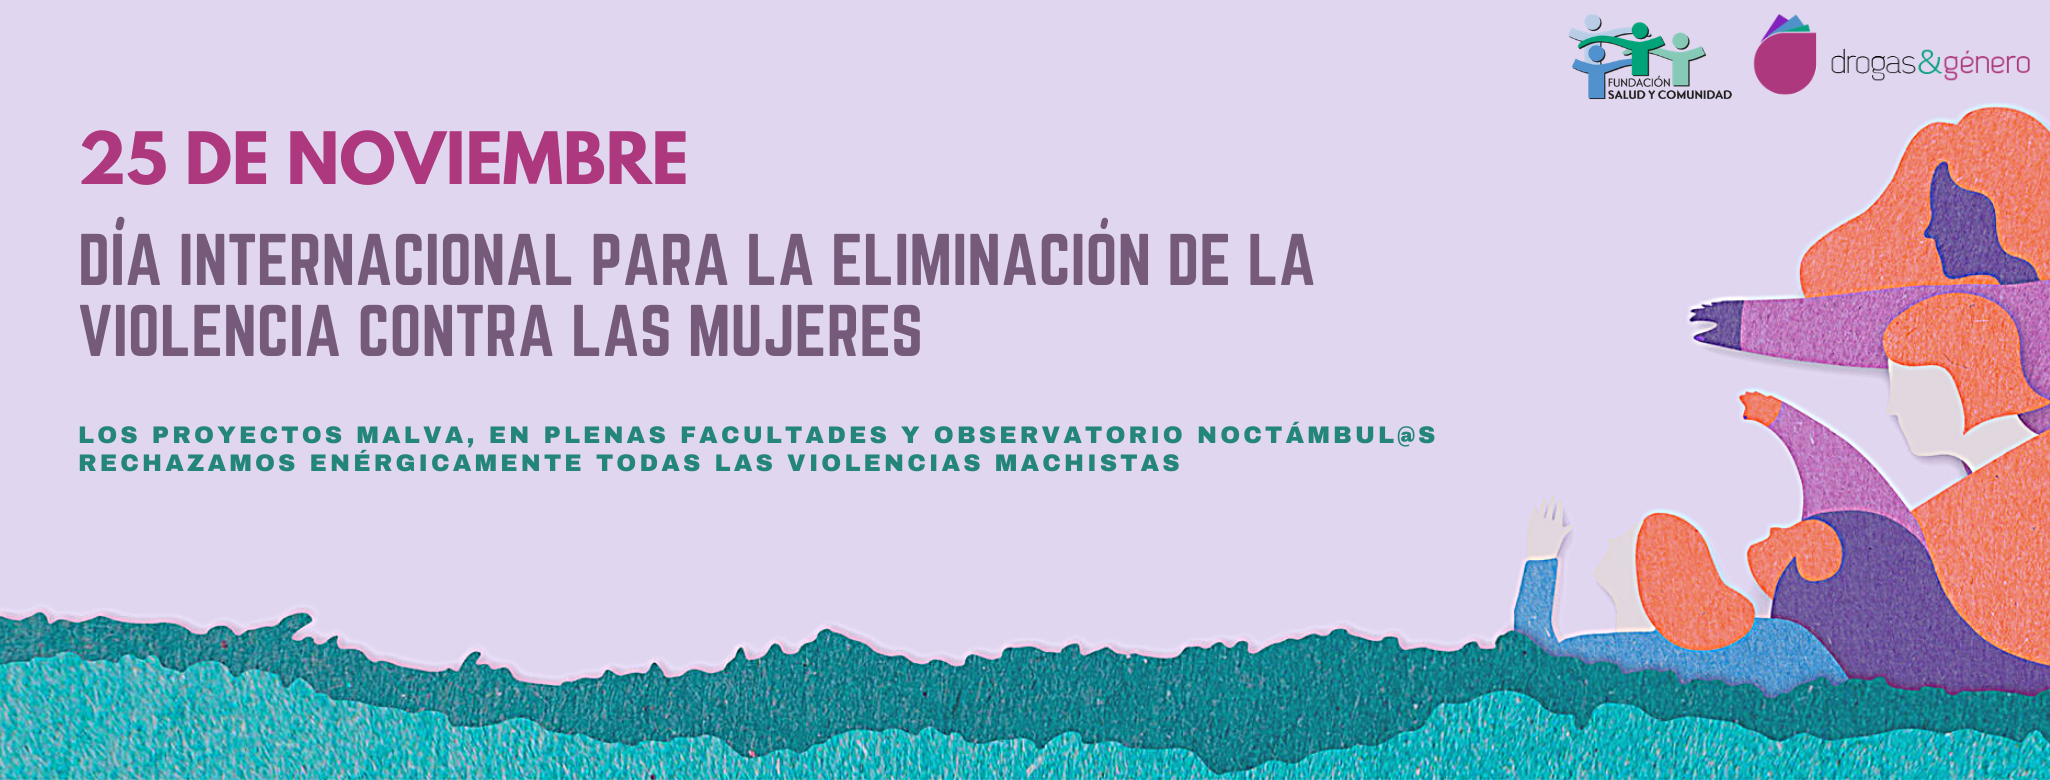 MANIFEST: DIA INTERNACIONAL PER L’ELIMINACIÓ DE LA VIOLÈNCIA ENVERS LES DONES 25 NOVEMBRE 2020